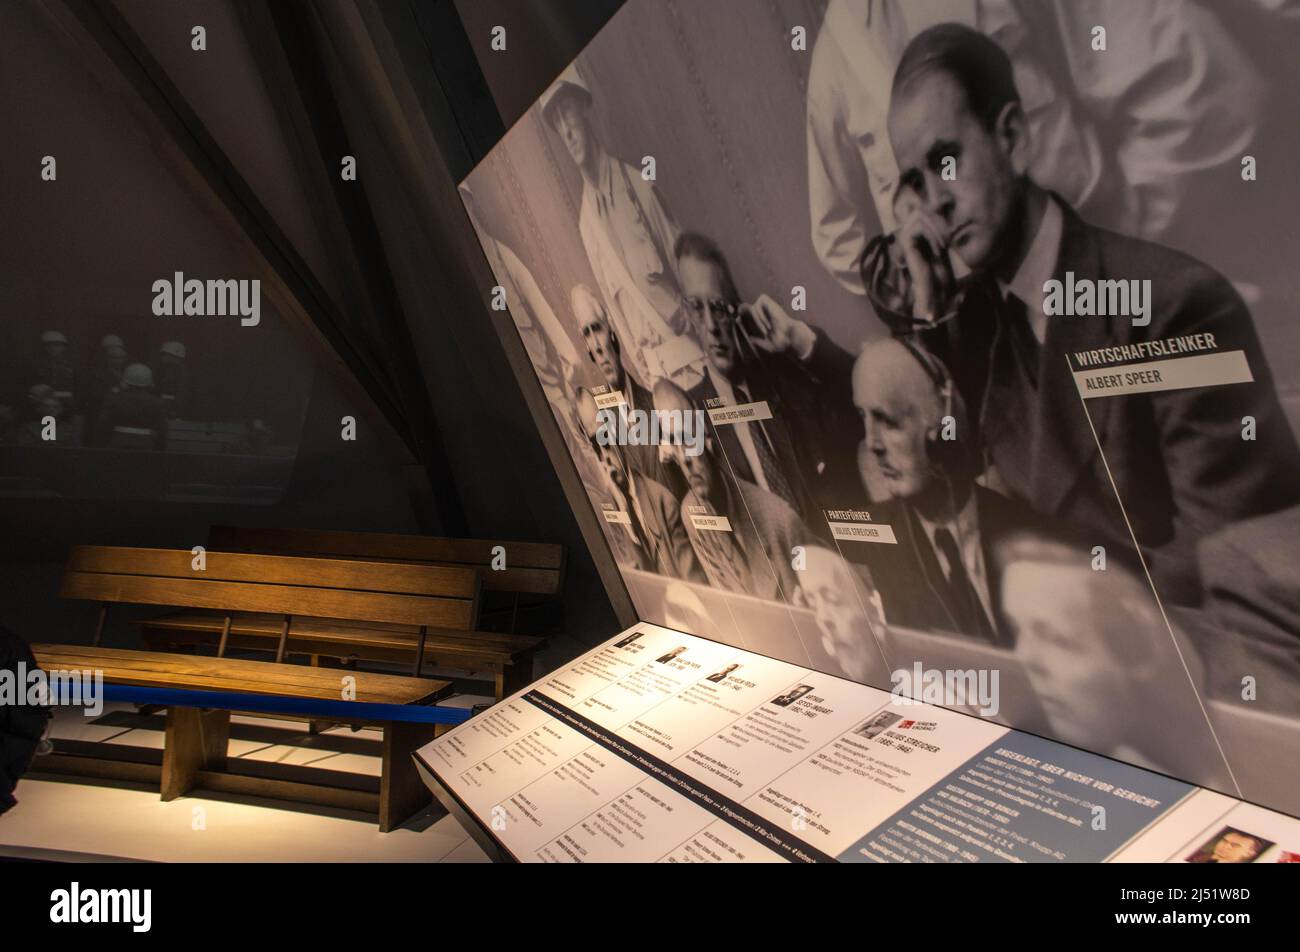 Albert Speer, Memorium Nuremberg trials, Nuremberg, Germany Stock Photo